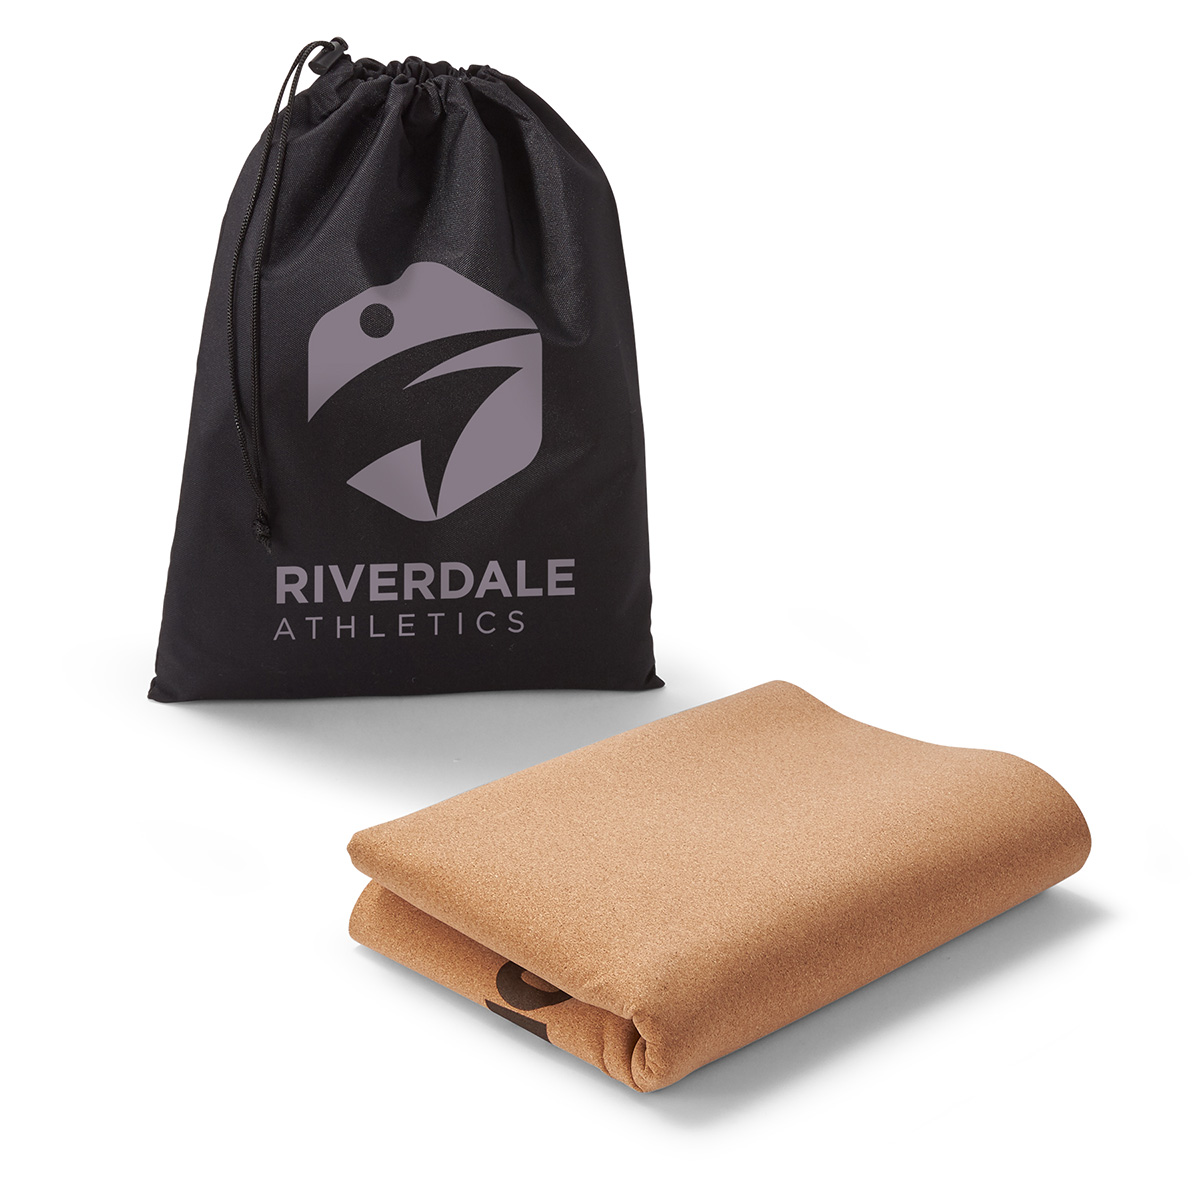 rpet bag and cork yoga mat